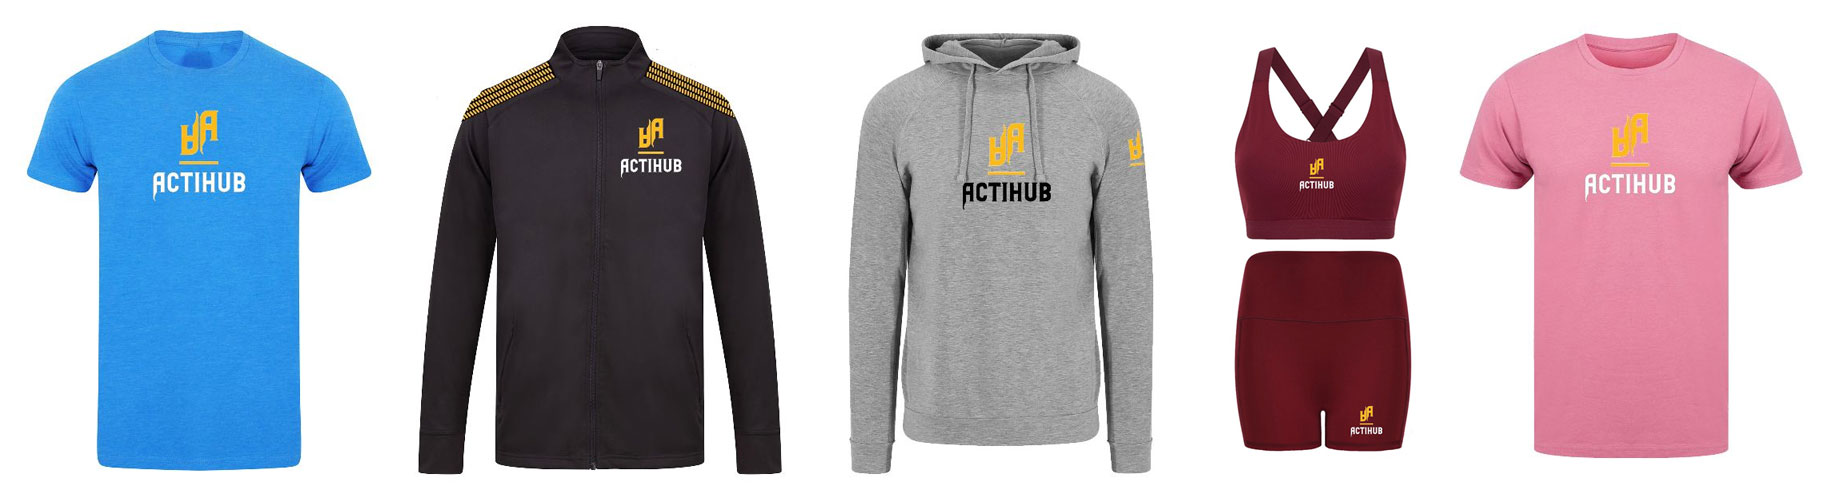 Range of Actihub clothing